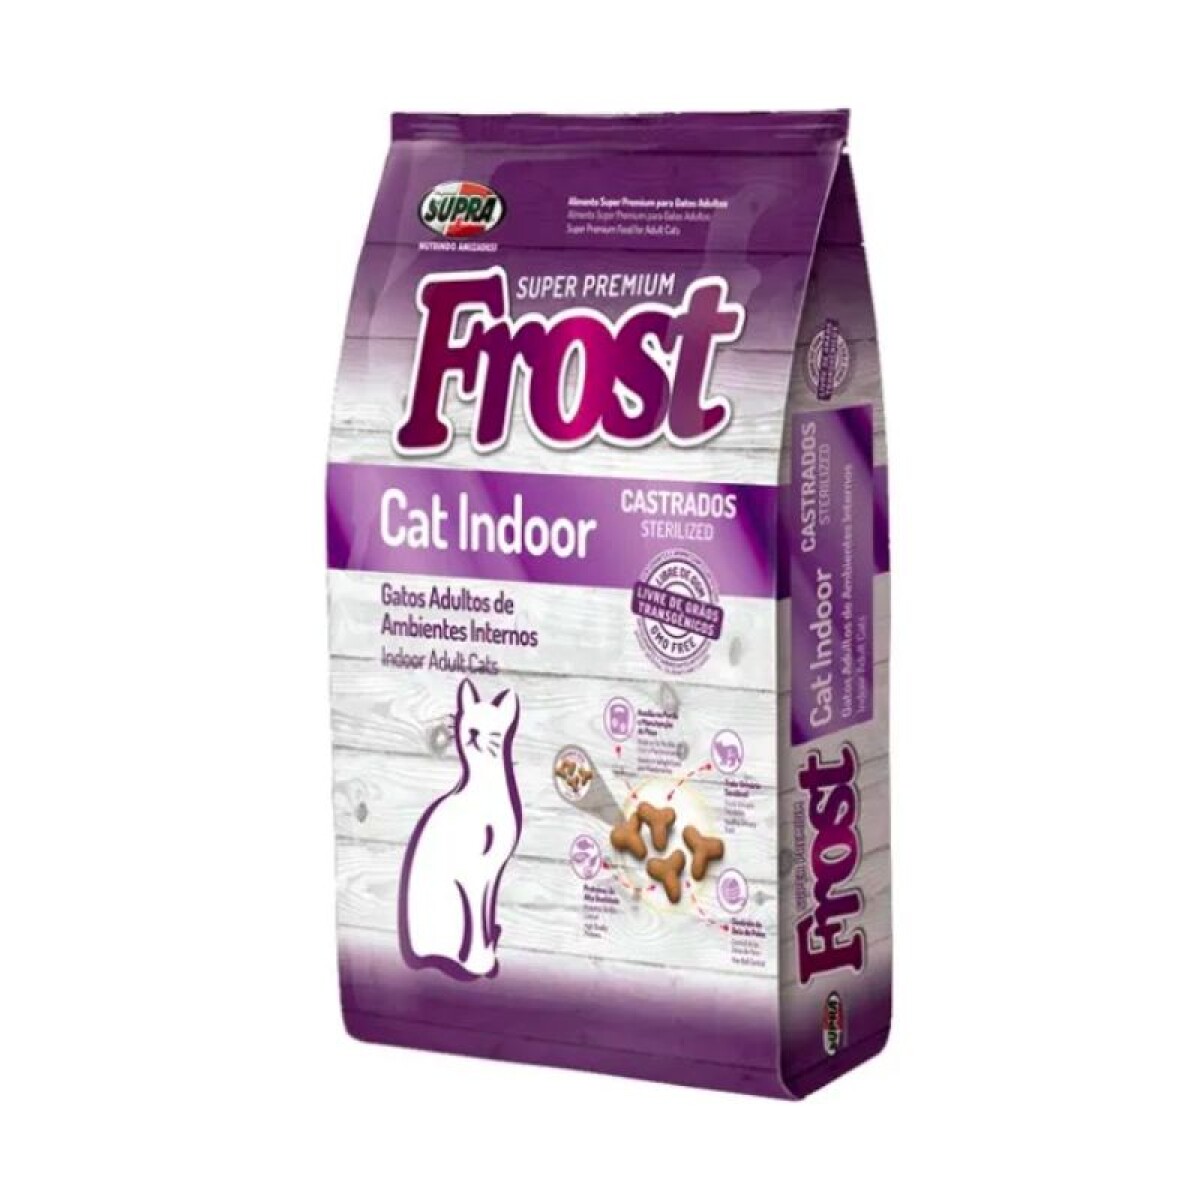 FROST CAT INDOOR 1.5KG - Frost Cat Indoor 1.5kg 